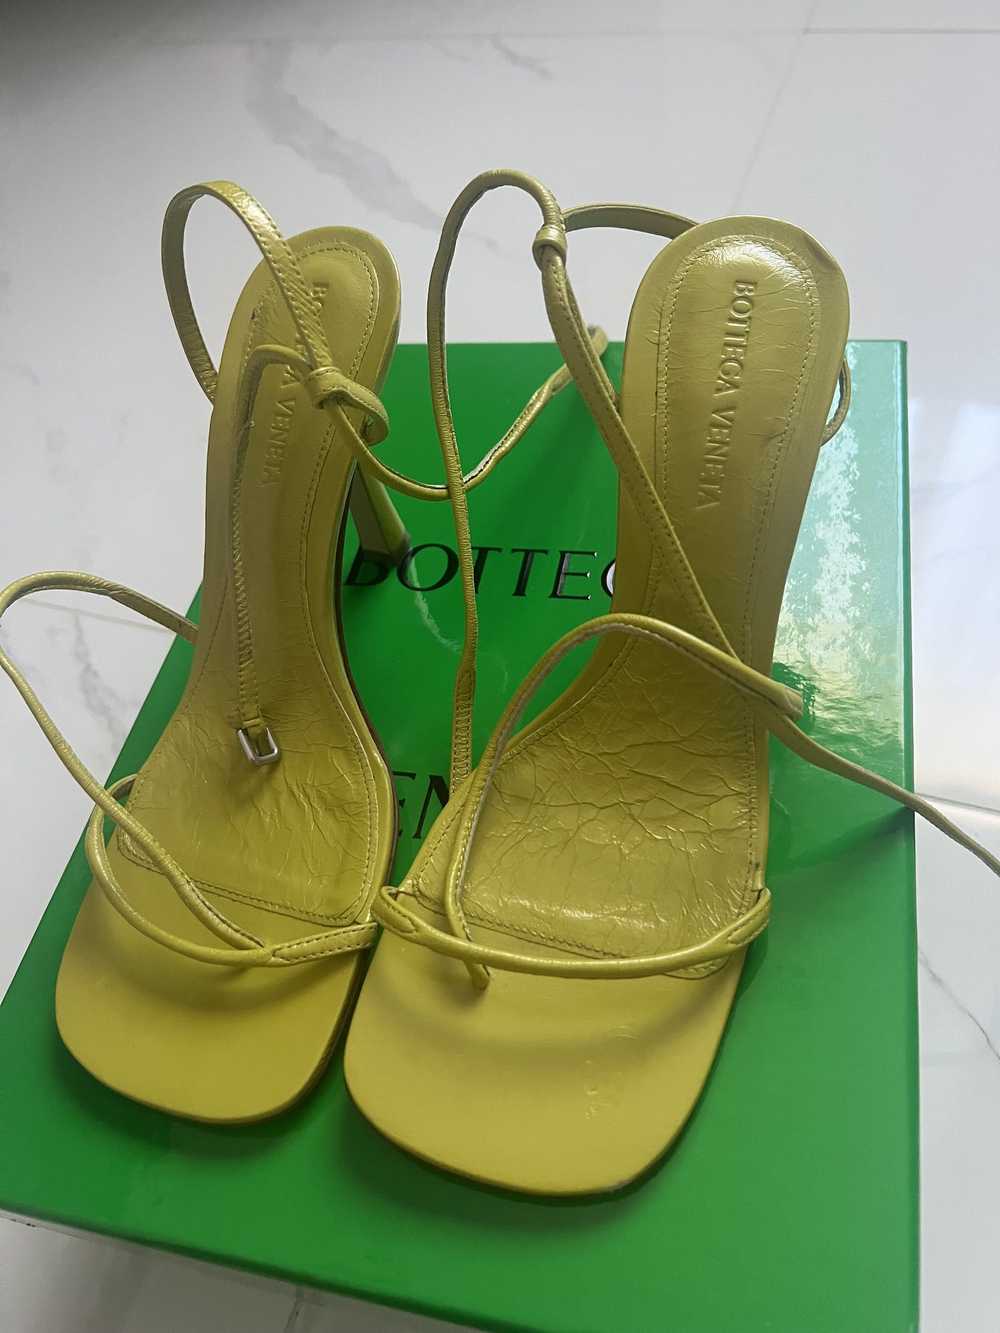 Bottega Veneta Bottega scrappy heels - image 2